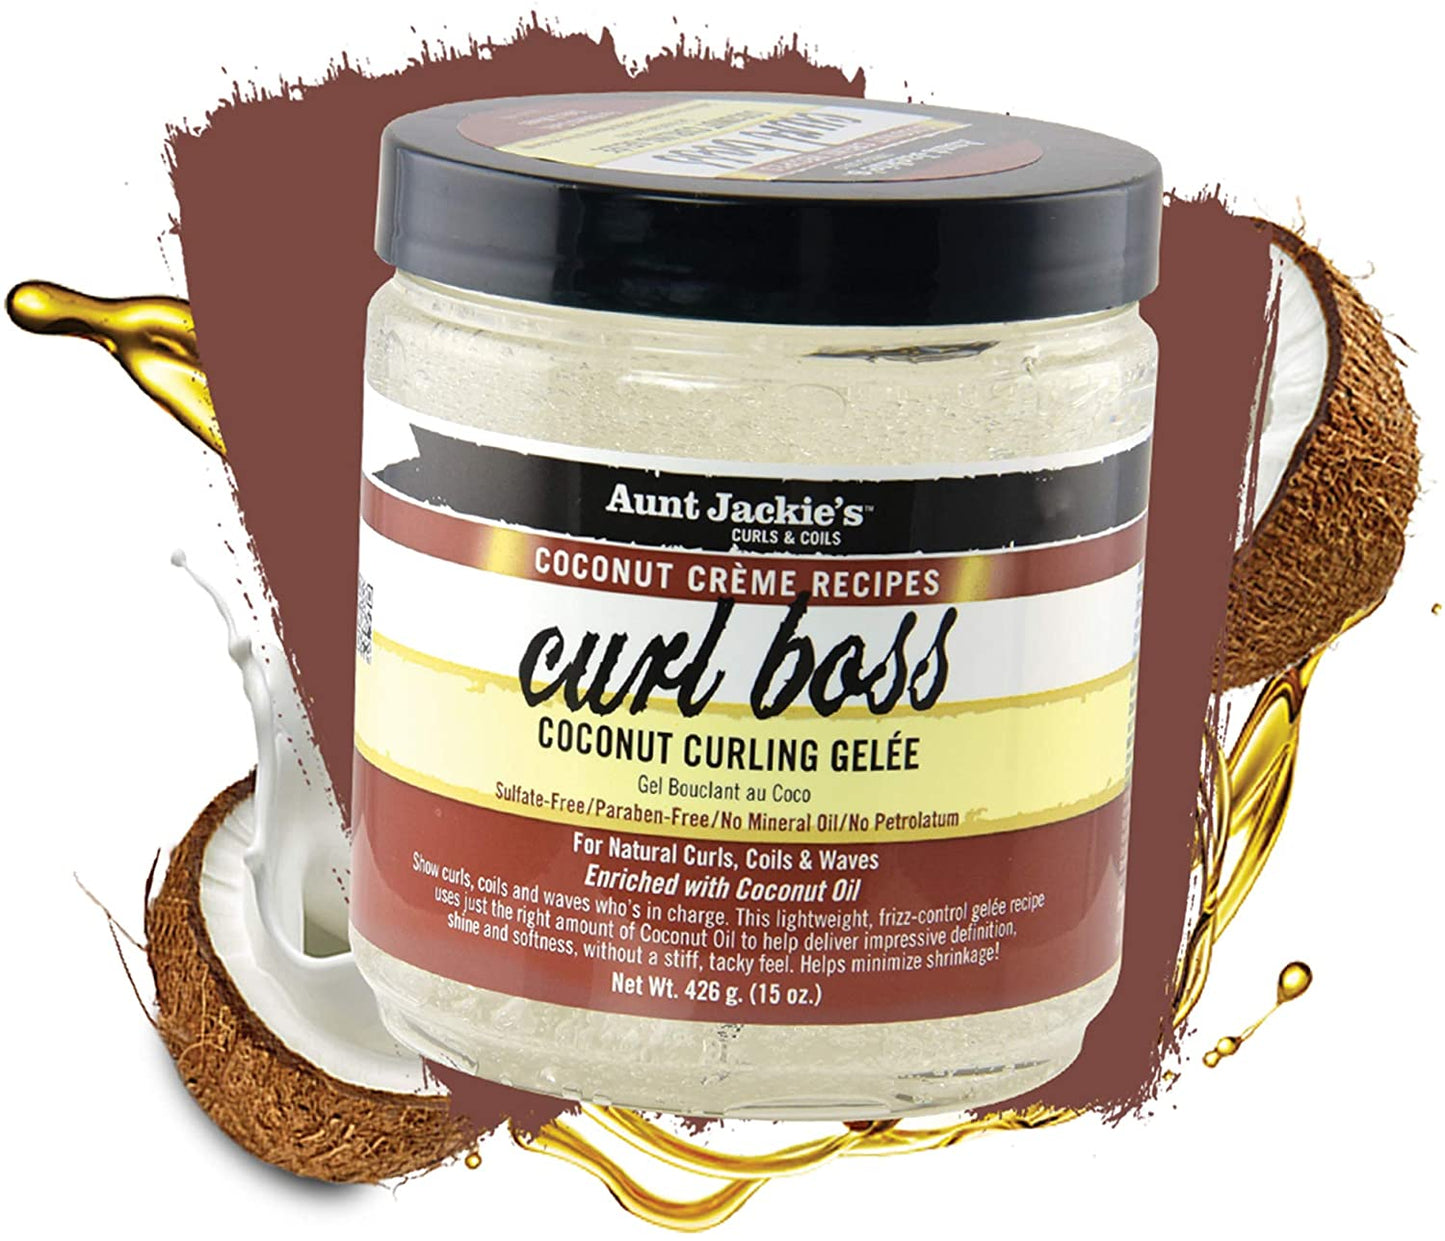 Aunt Jackie's Curls & Coils Coconut Creme Recipes Curl Boss Coconut Curling Gelée - 15 Oz